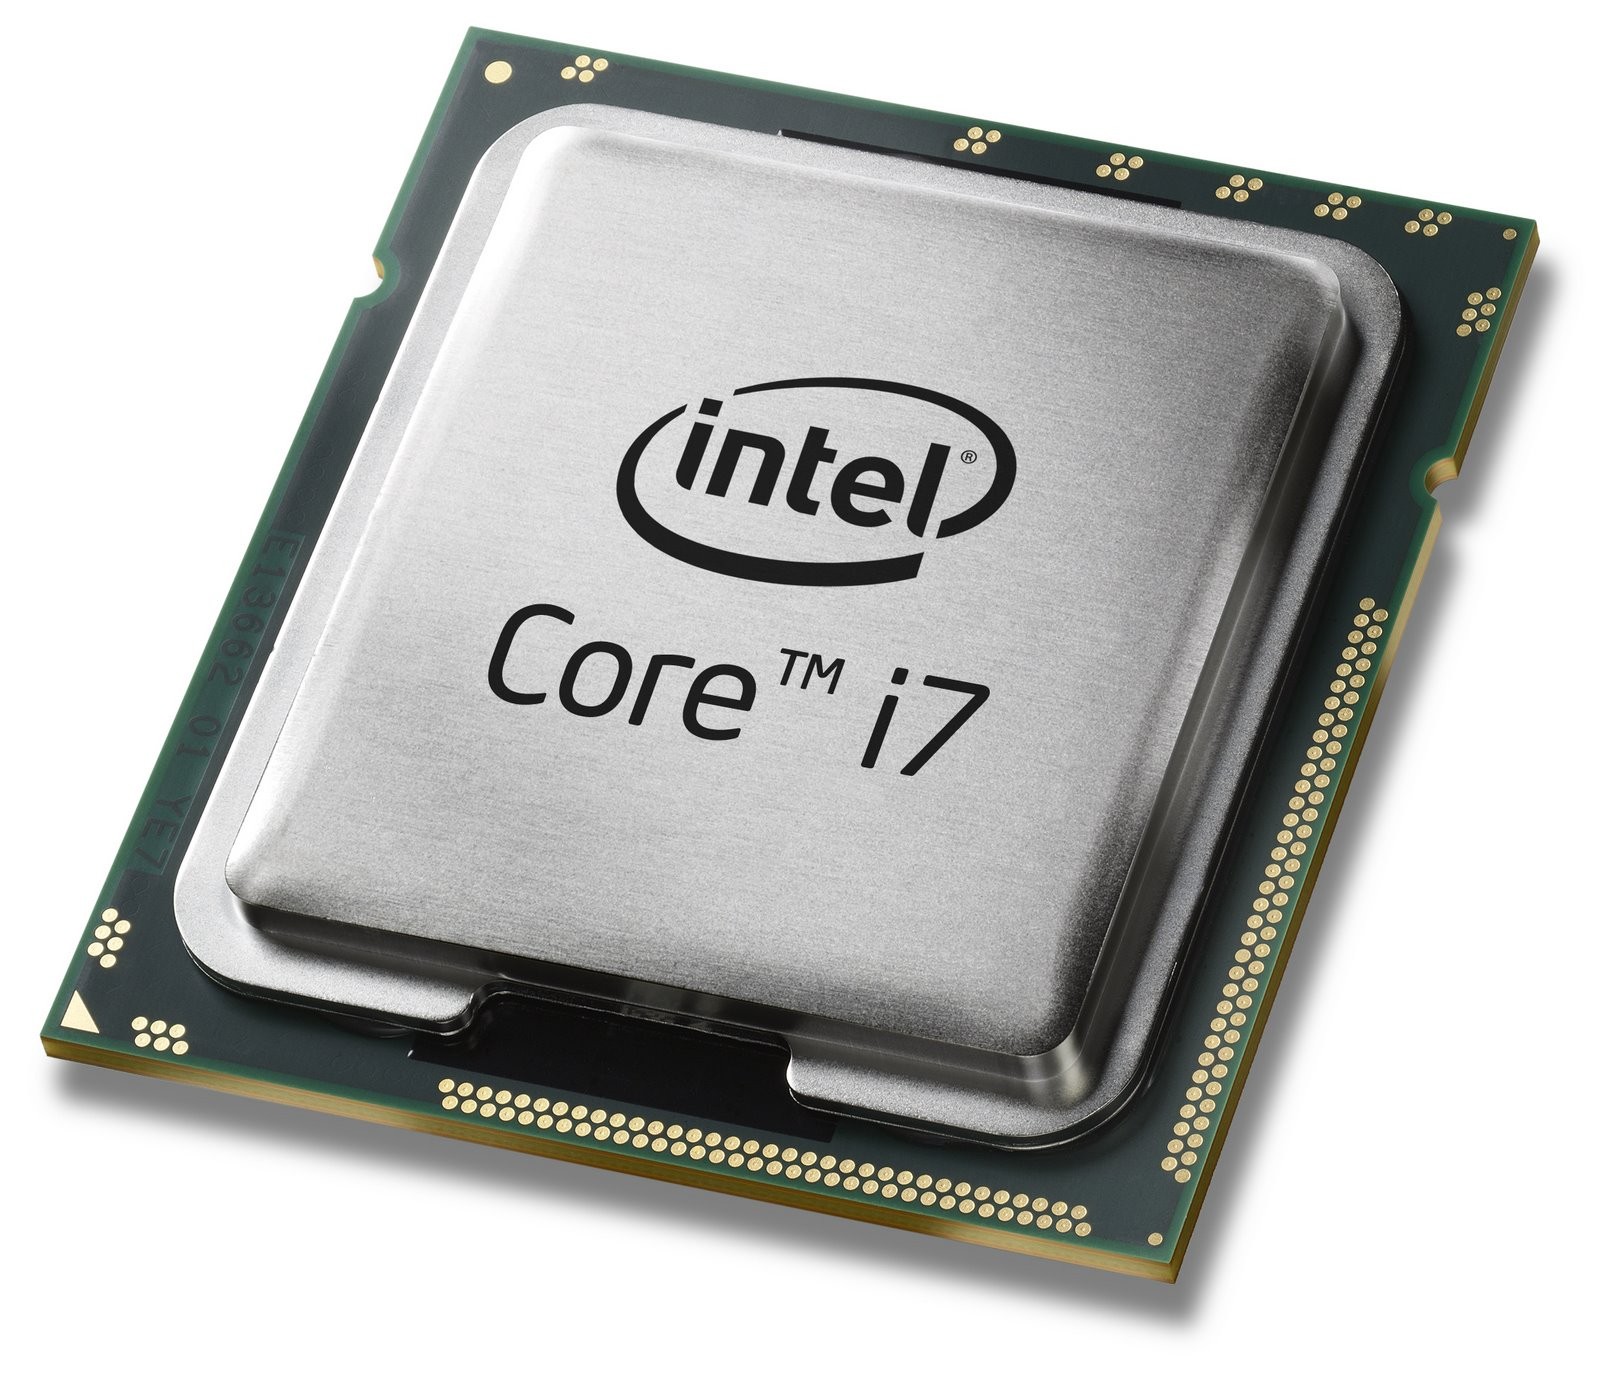 500030290-Intel Core i7-2760QM SR02R 2.4Ghz 5GT/s BGA 1224 Processor-image